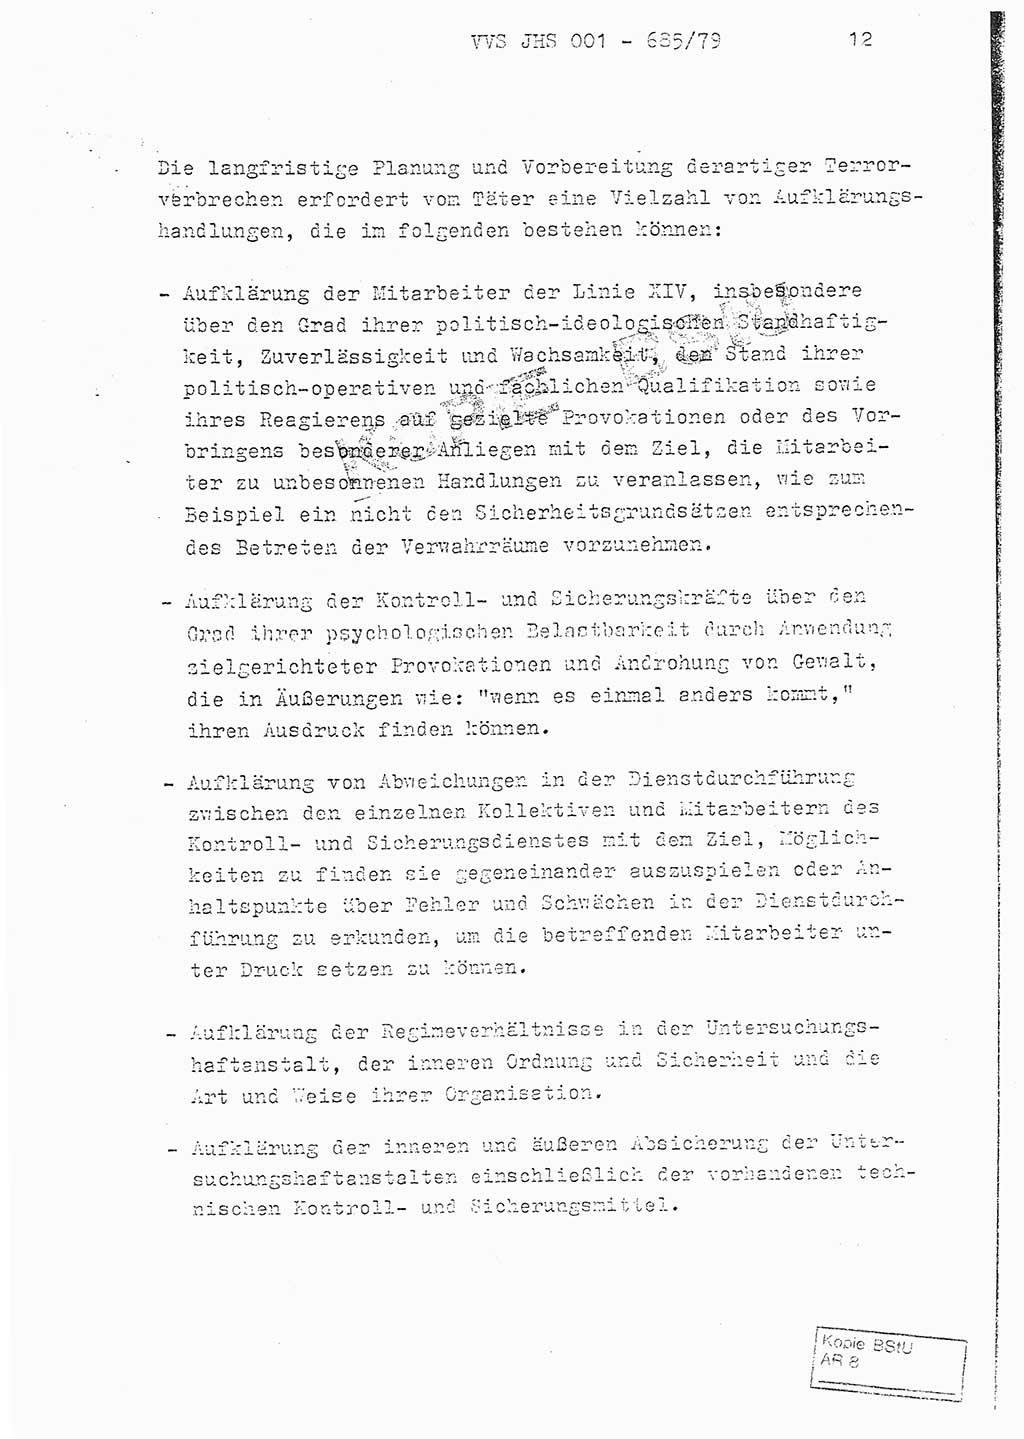 Fachschulabschlußarbeit Oberleutnant Helmut Peckruhn (BV Bln. Abt. ⅩⅣ), Ministerium für Staatssicherheit (MfS) [Deutsche Demokratische Republik (DDR)], Juristische Hochschule (JHS), Vertrauliche Verschlußsache (VVS) 001-685/79, Potsdam 1979, Seite 12 (FS-Abschl.-Arb. MfS DDR JHS VVS 001-685/79 1979, S. 12)